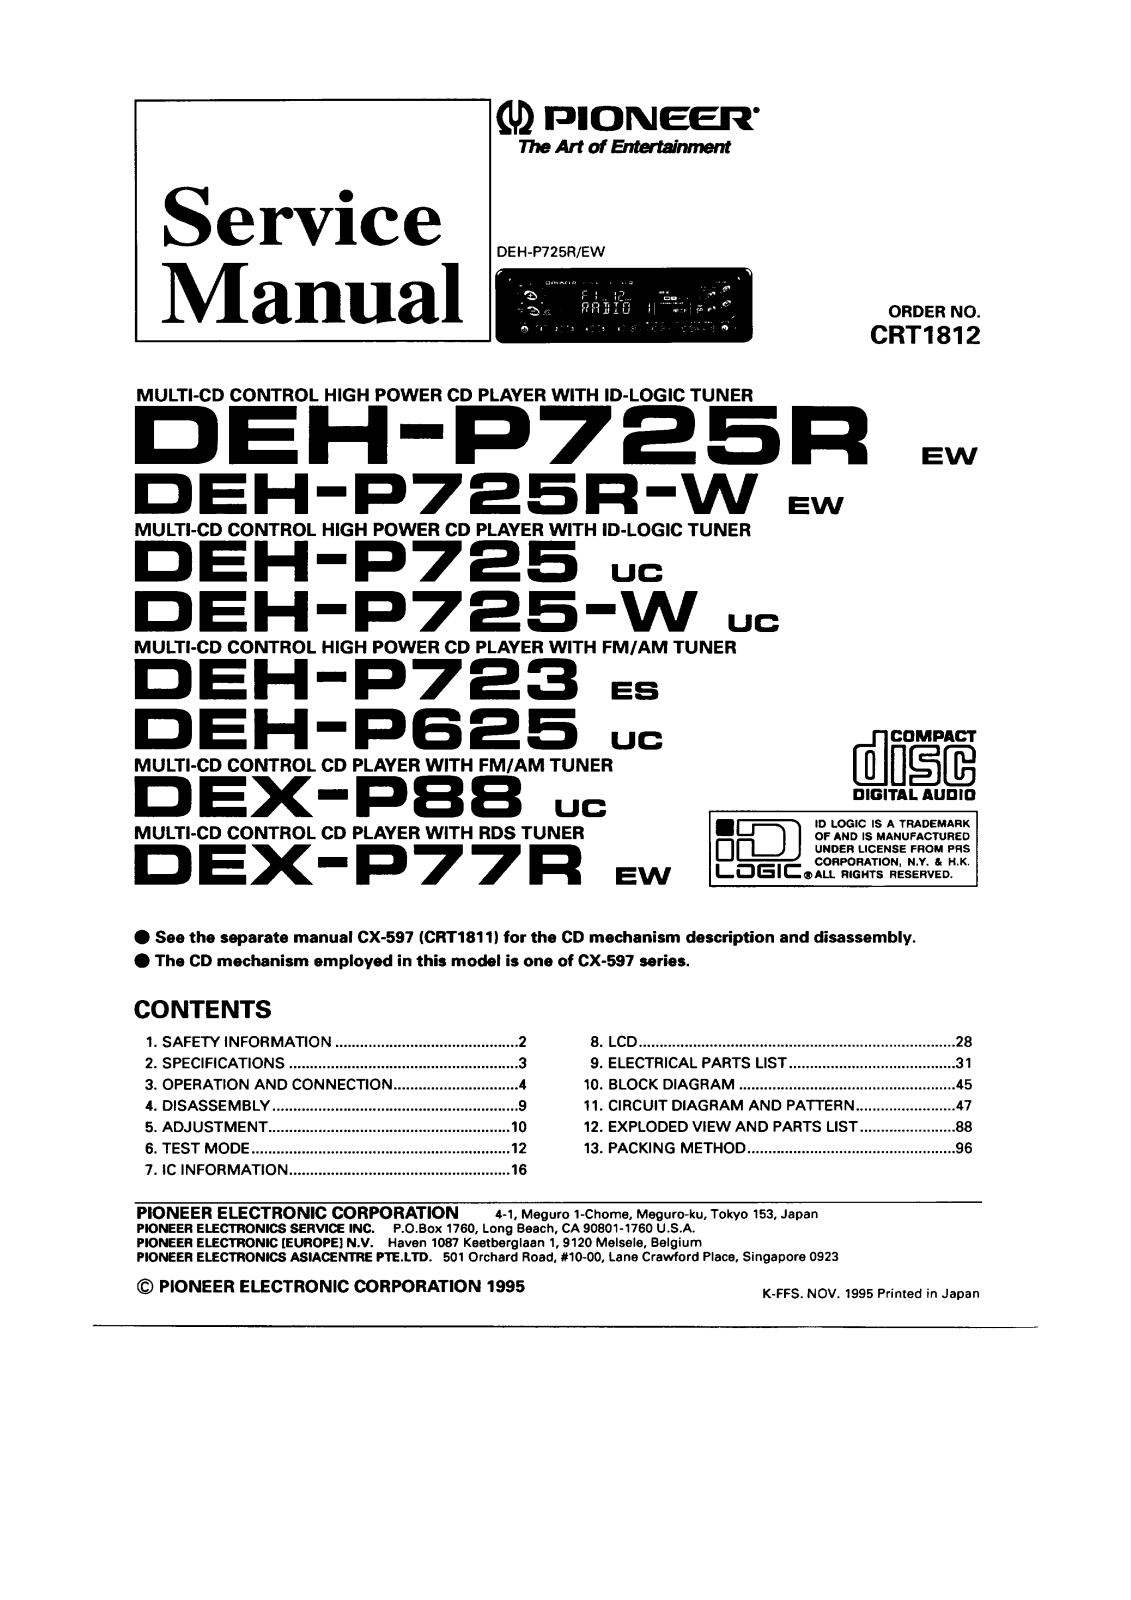 Pioneer DEHP-625, DEHP-723, DEHP-725, DEHP-725-R, DEHP-725-RW Service manual